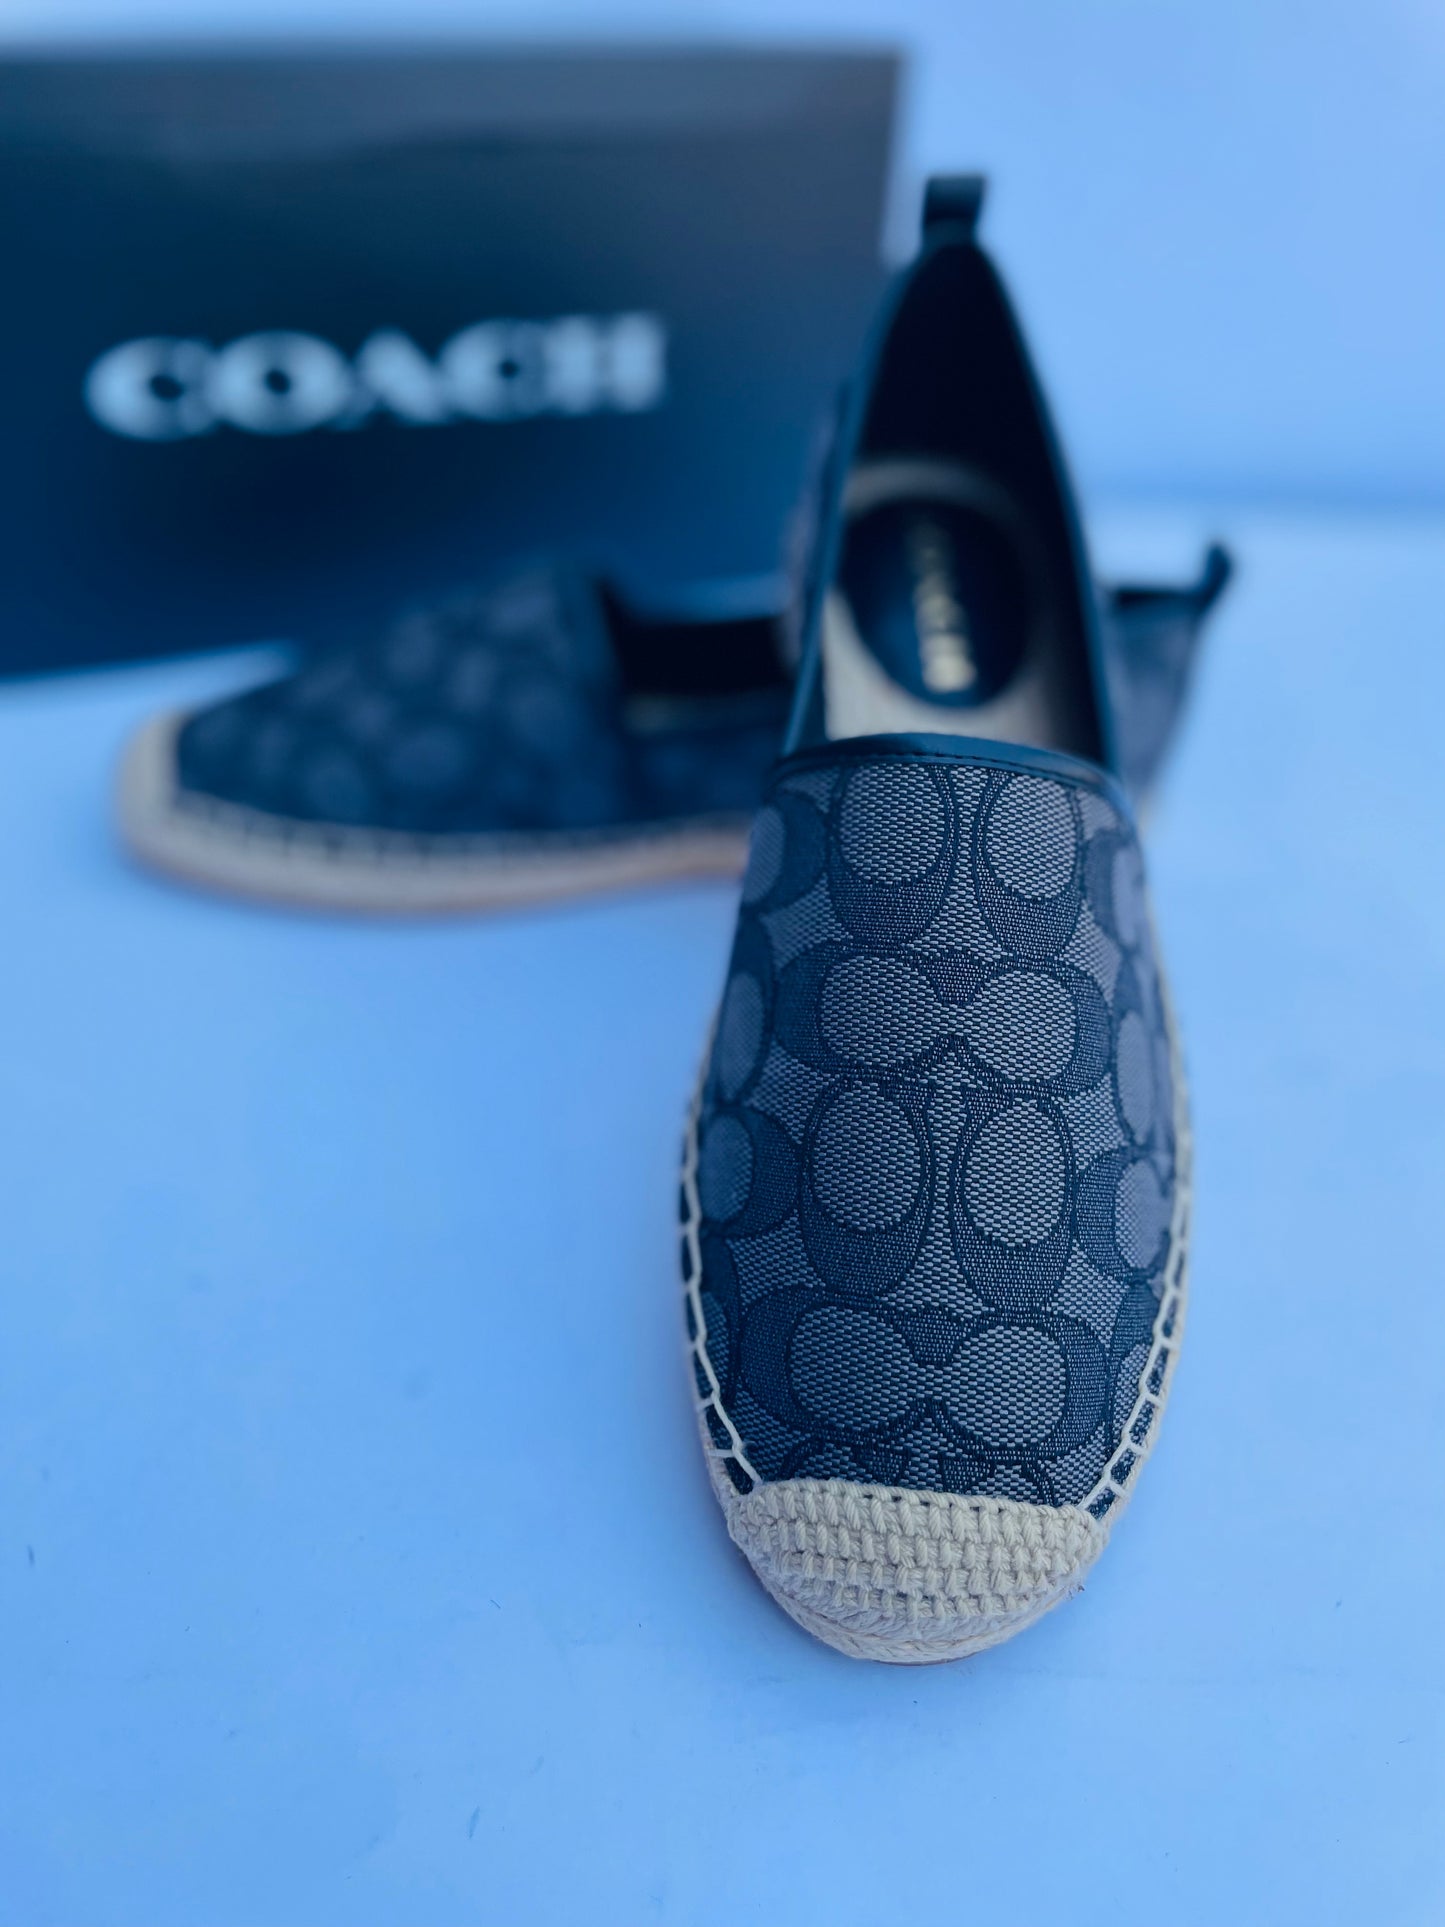 Coach shoes